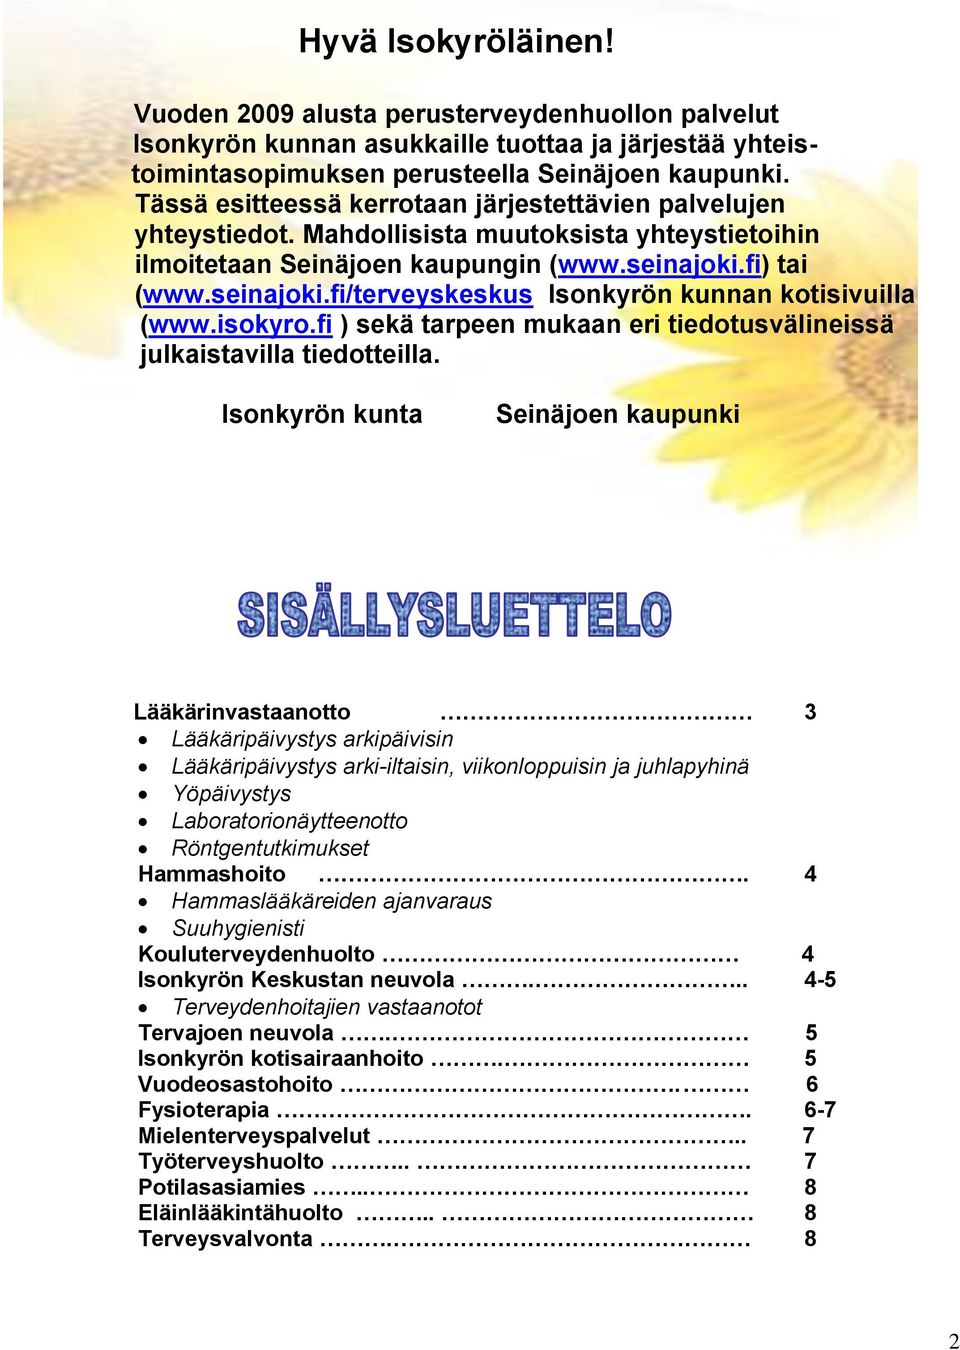 fi) tai (www.seinajoki.fi/terveyskeskus Isonkyrön kunnan kotisivuilla (www.isokyro.fi ) sekä tarpeen mukaan eri tiedotusvälineissä julkaistavilla tiedotteilla.